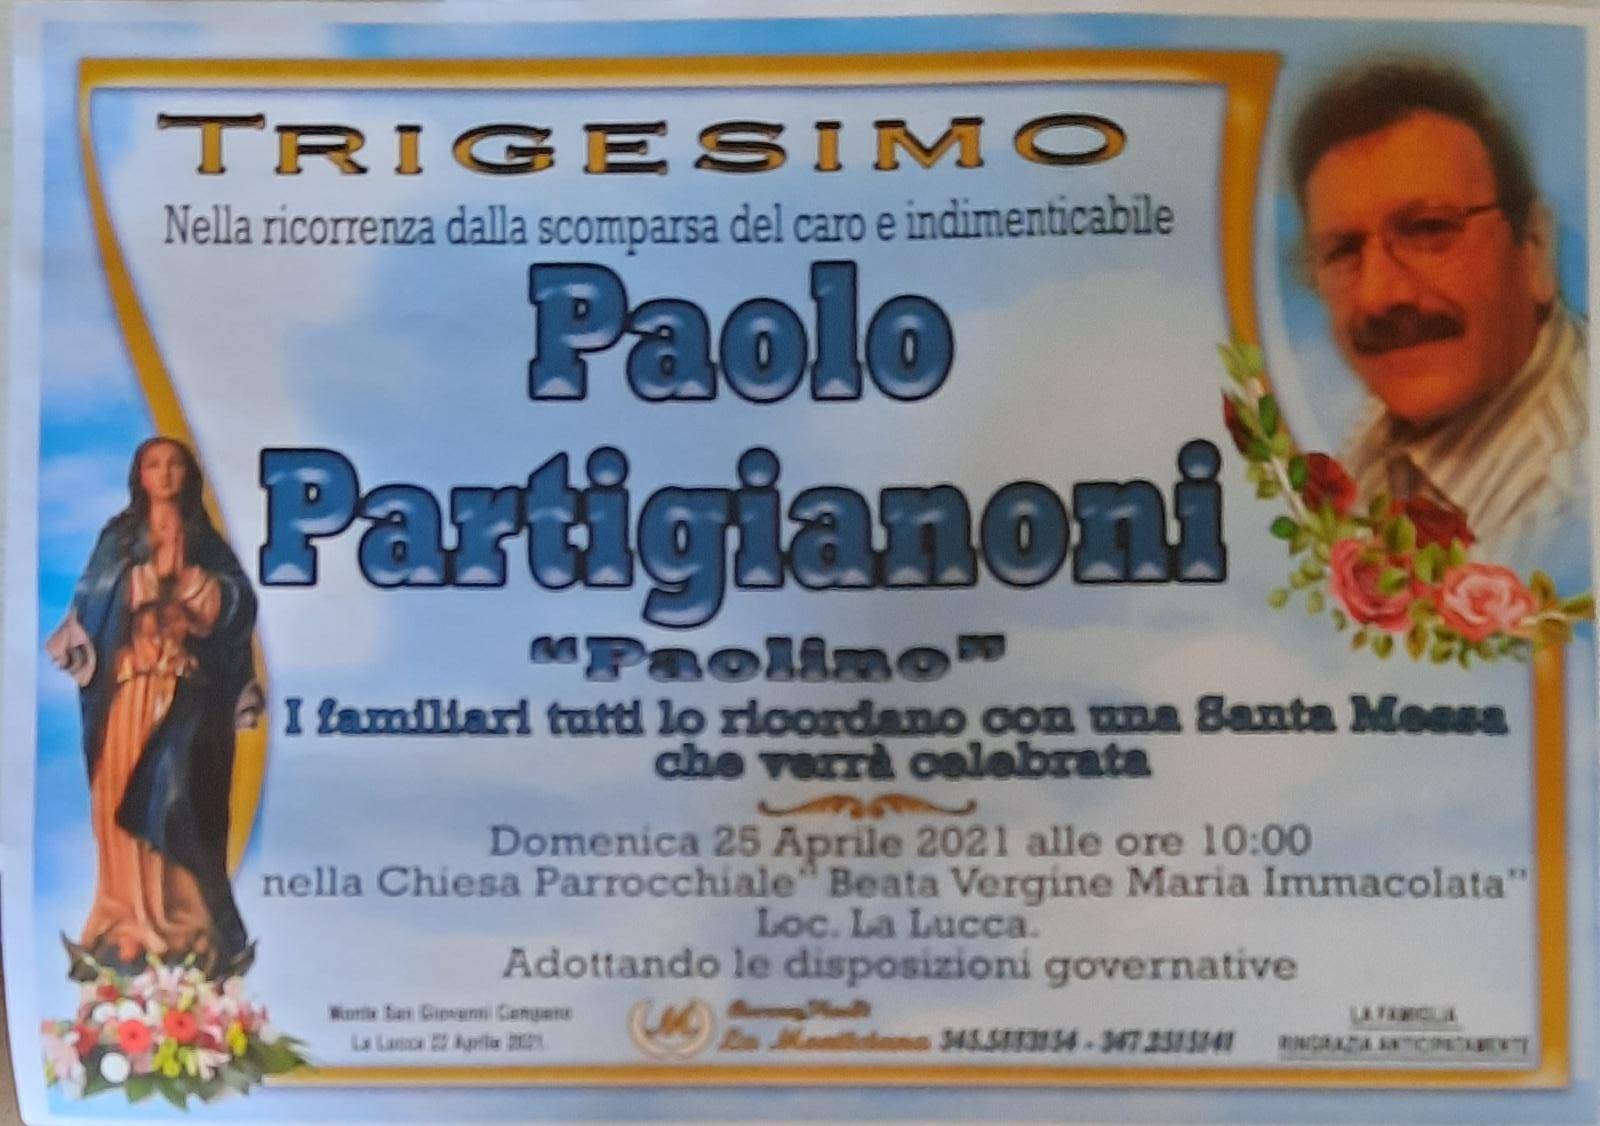 Paolo Partigianoni